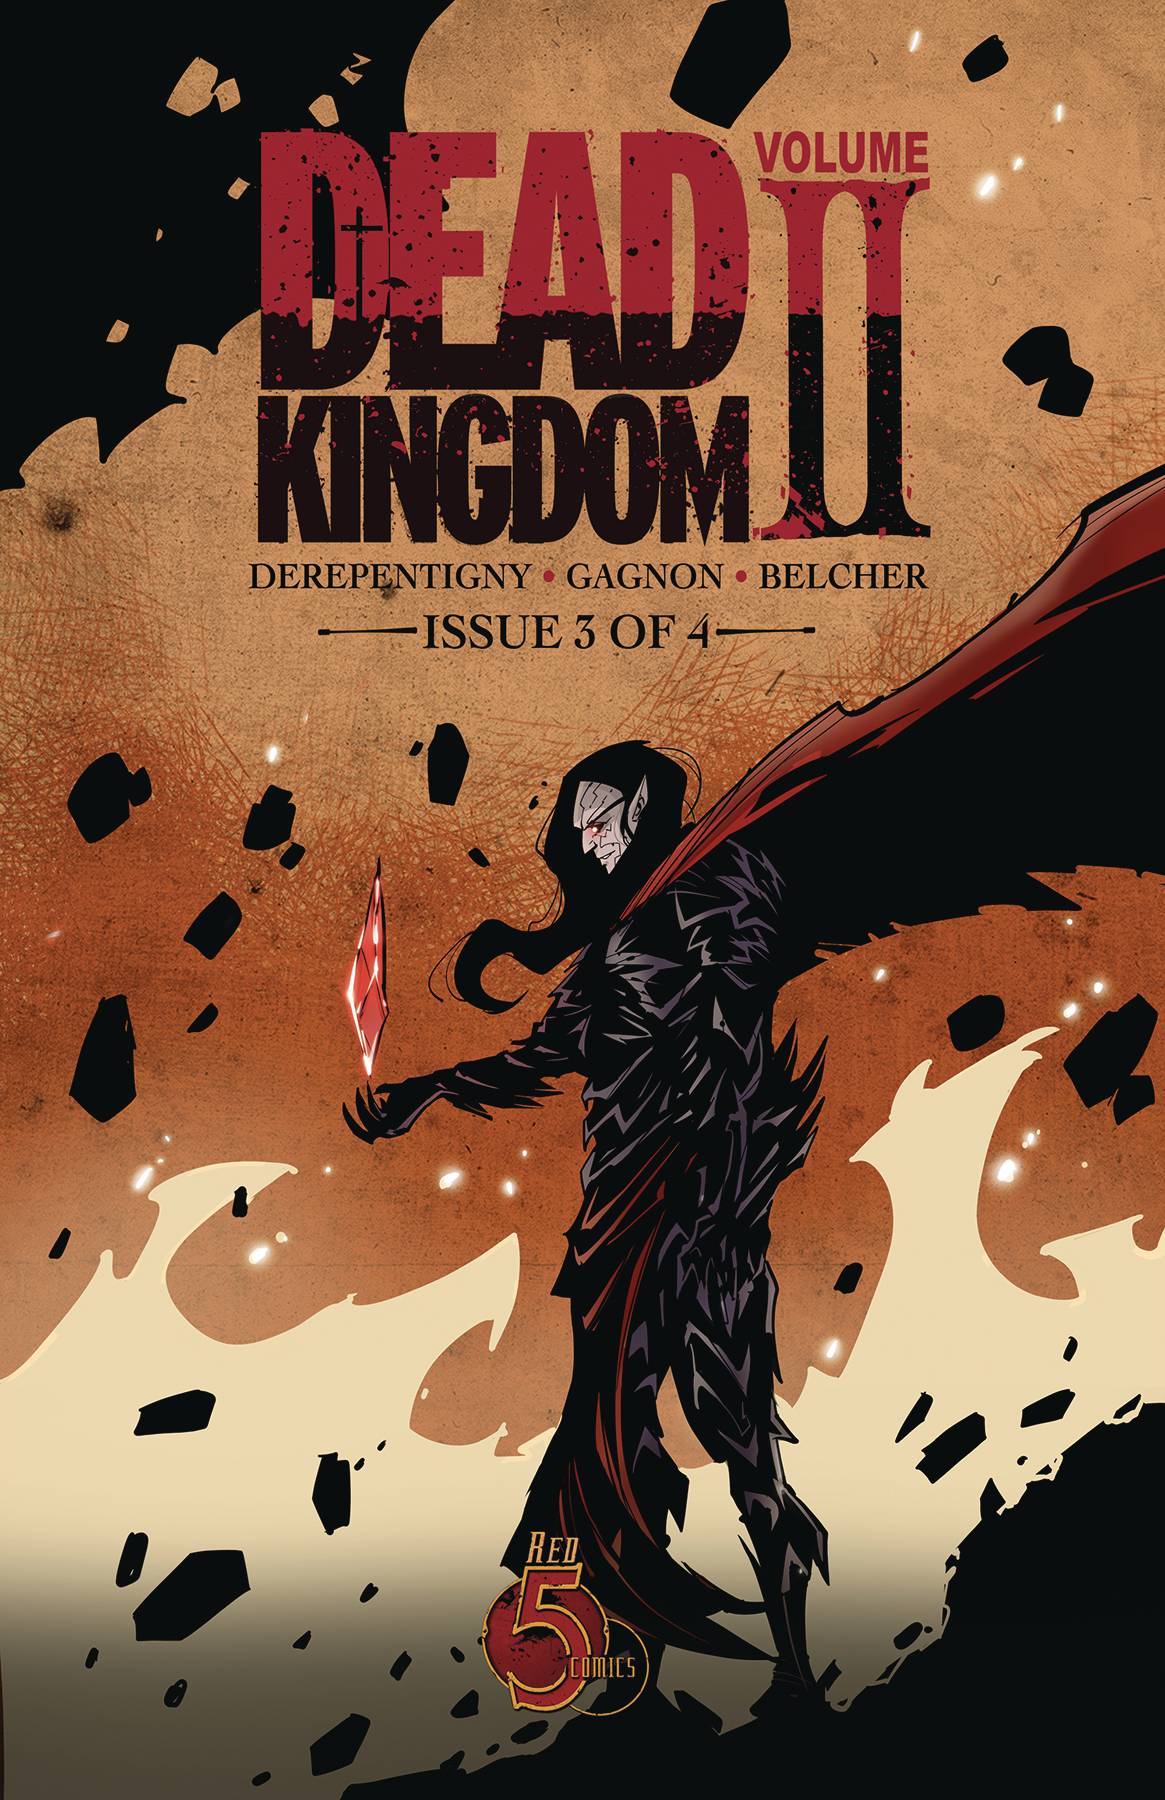 DEAD KINGDOM VOL 2 #3 COMIC COVER